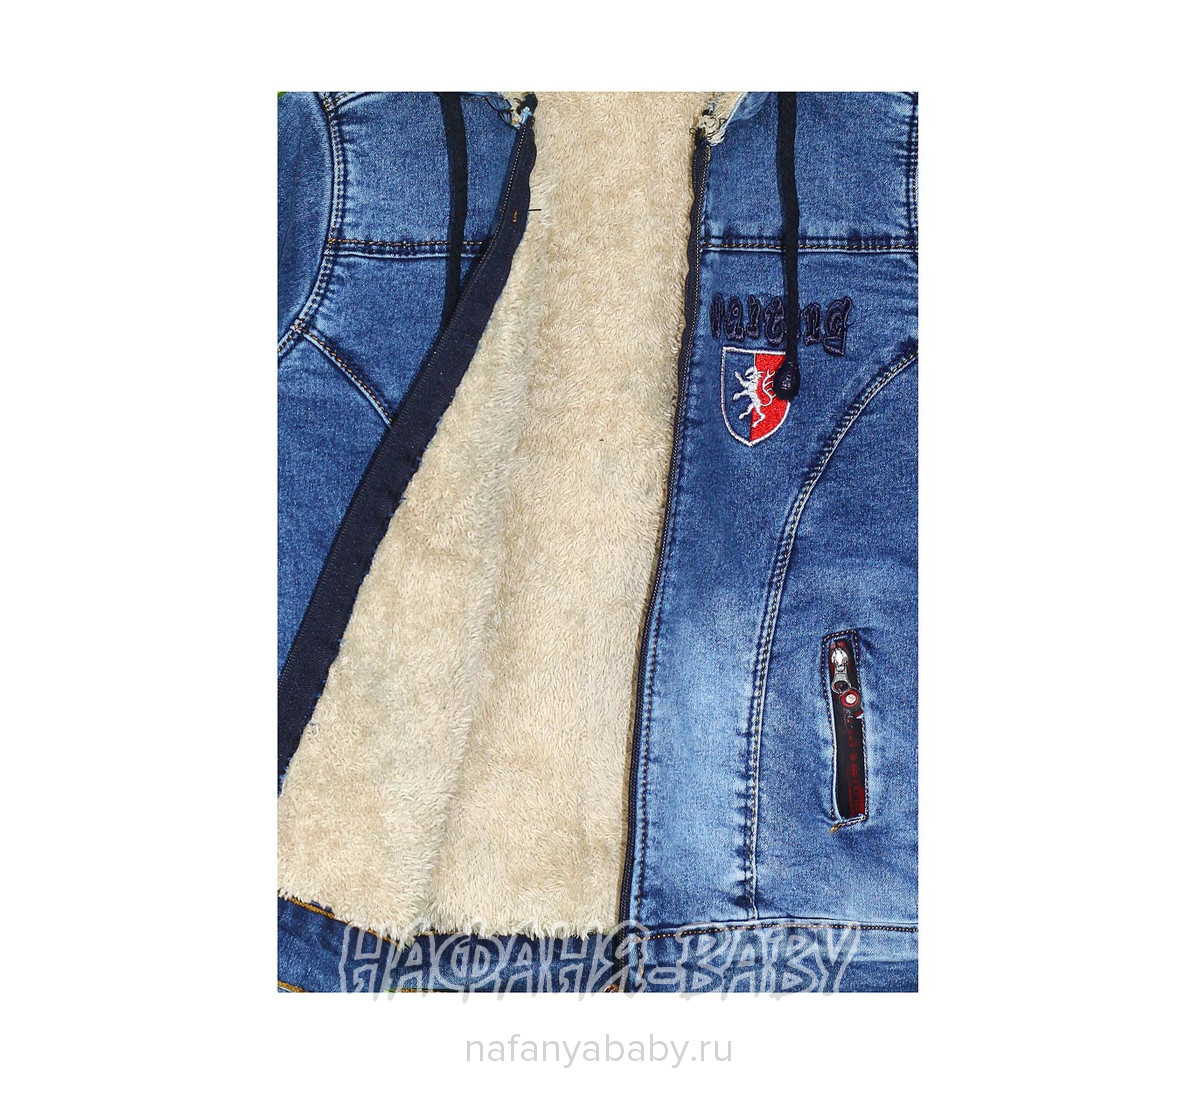 Джинсовая утепленная куртка TATI Jeans арт: 9224, 1-4 года, 5-9 лет, цвет синий, оптом Турция